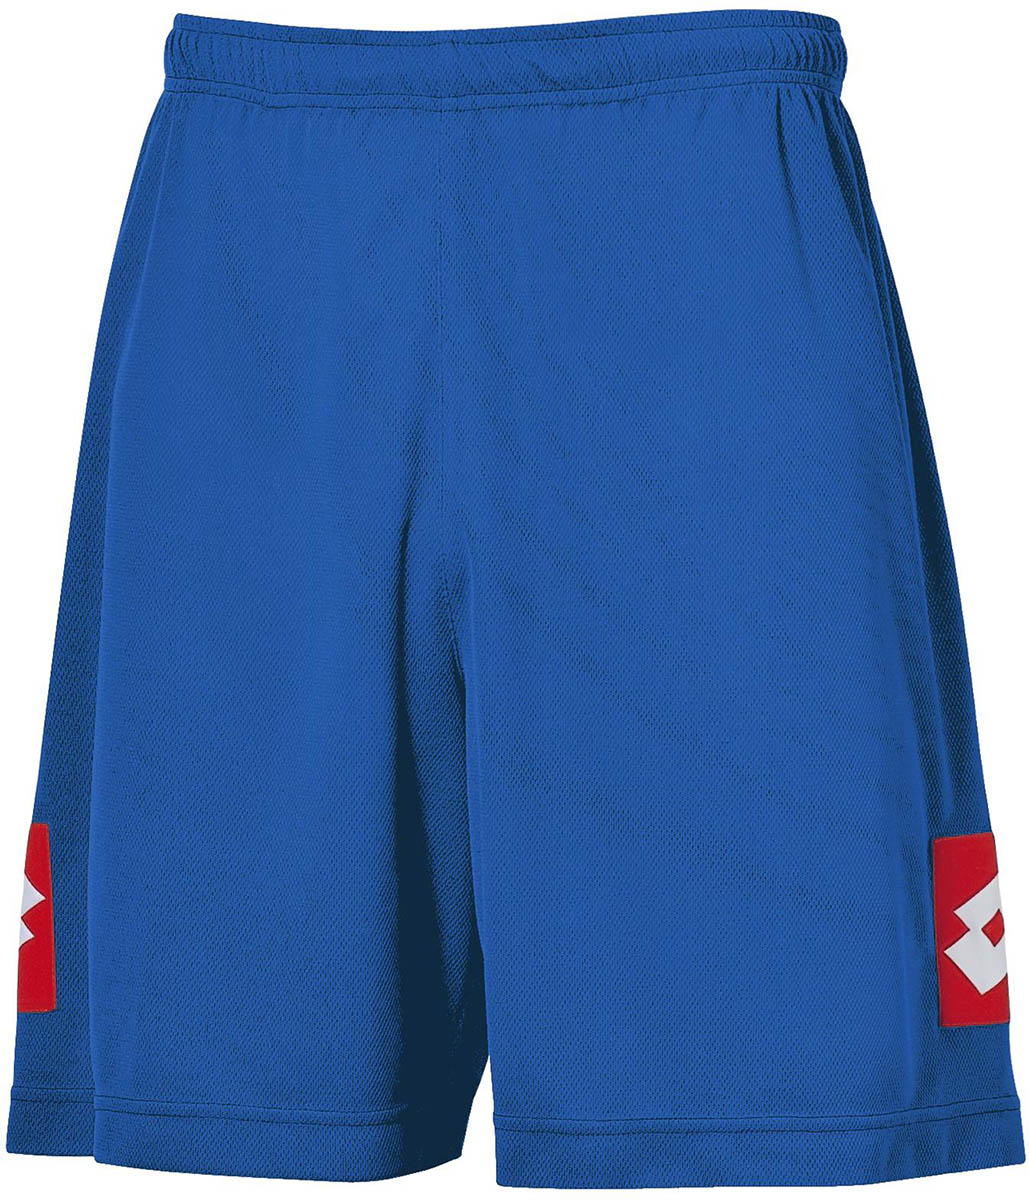 SHORT SPEED - Men’s soccer shorts